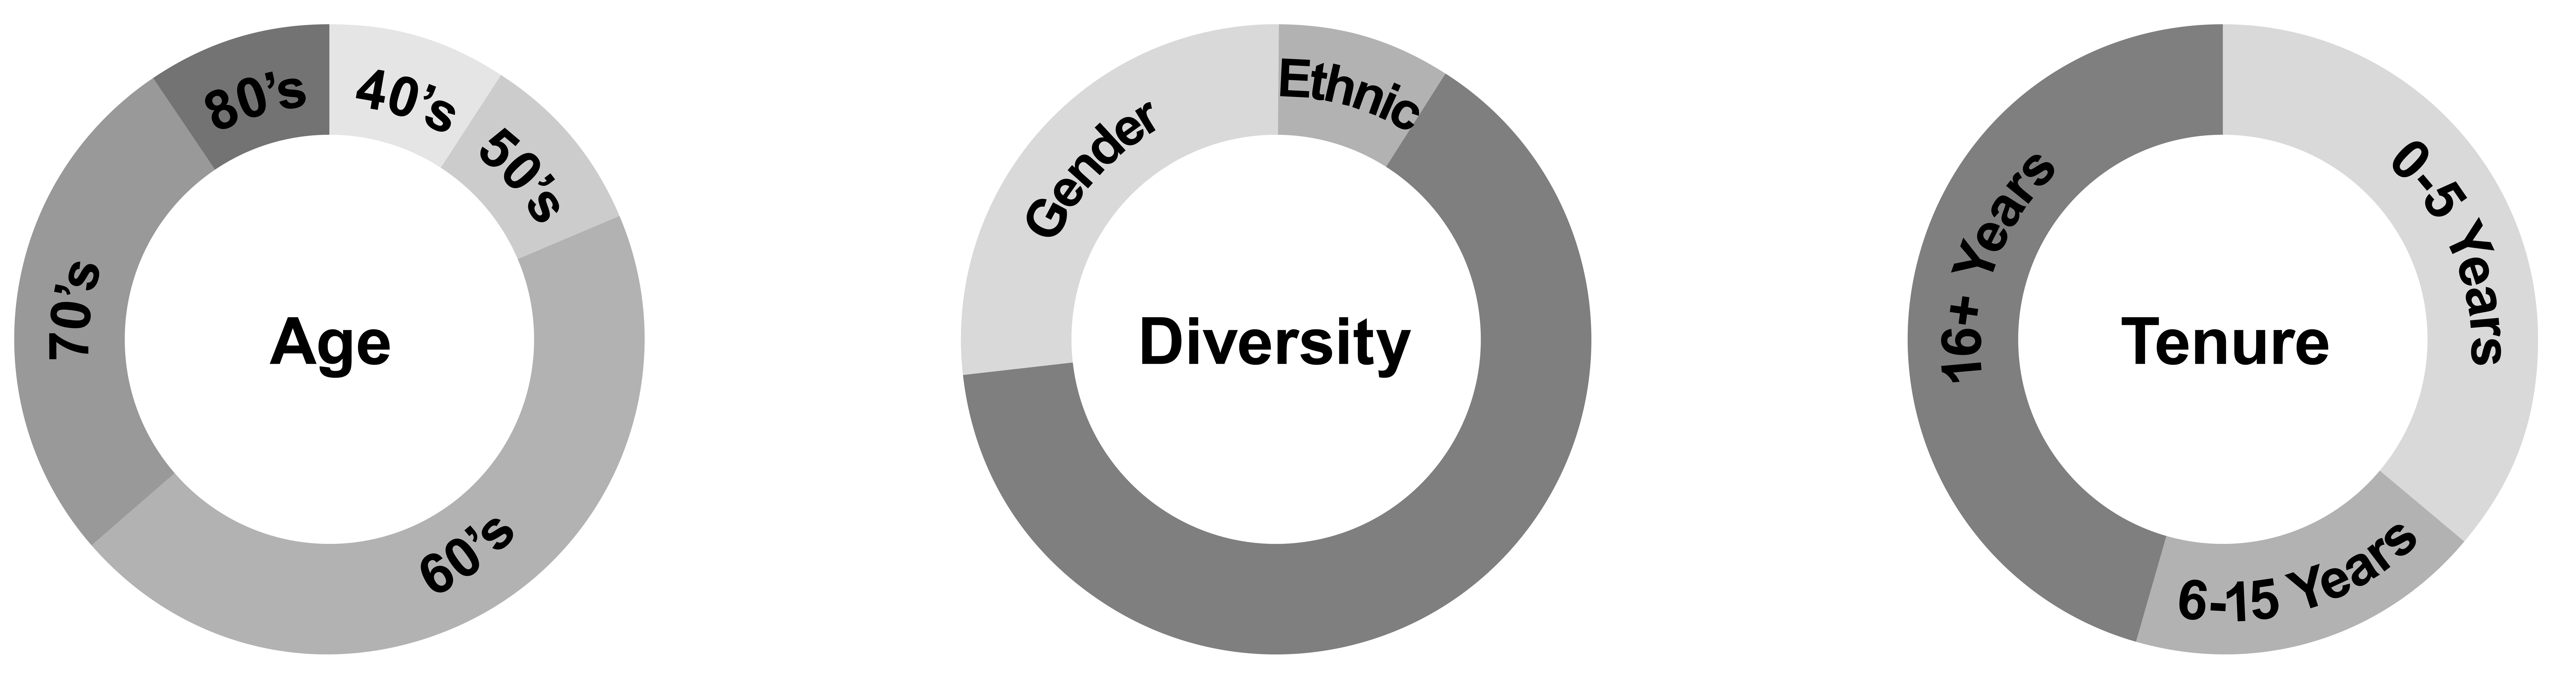 diversitypieshighresolutio.jpg